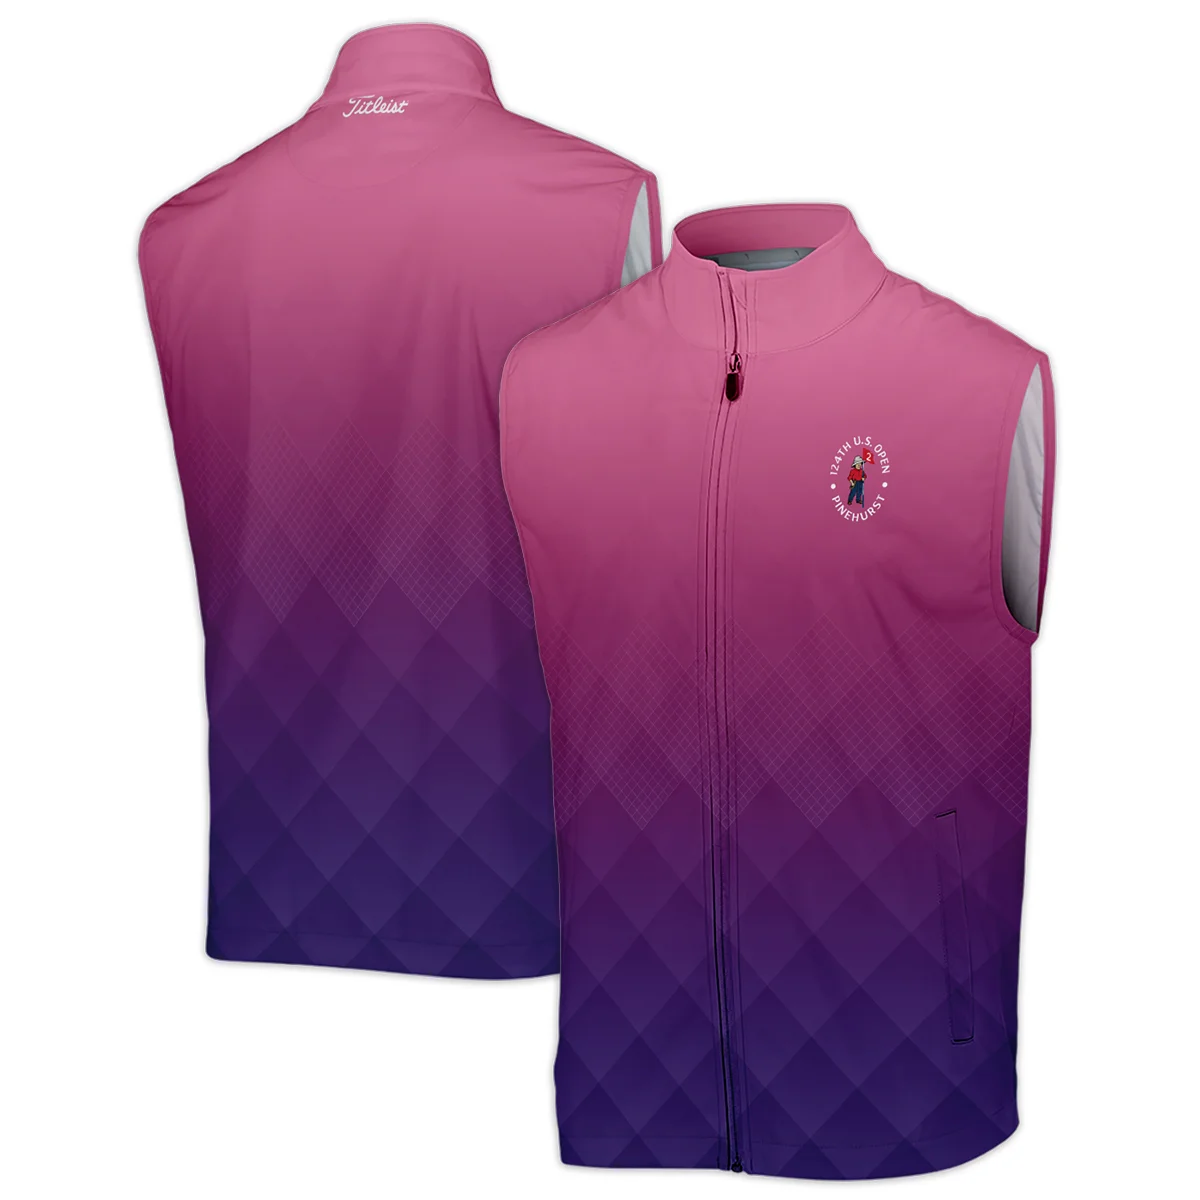 Titleist 124th U.S. Open Pinehurst Purple Pink Gradient Abstract Sleeveless Jacket Style Classic